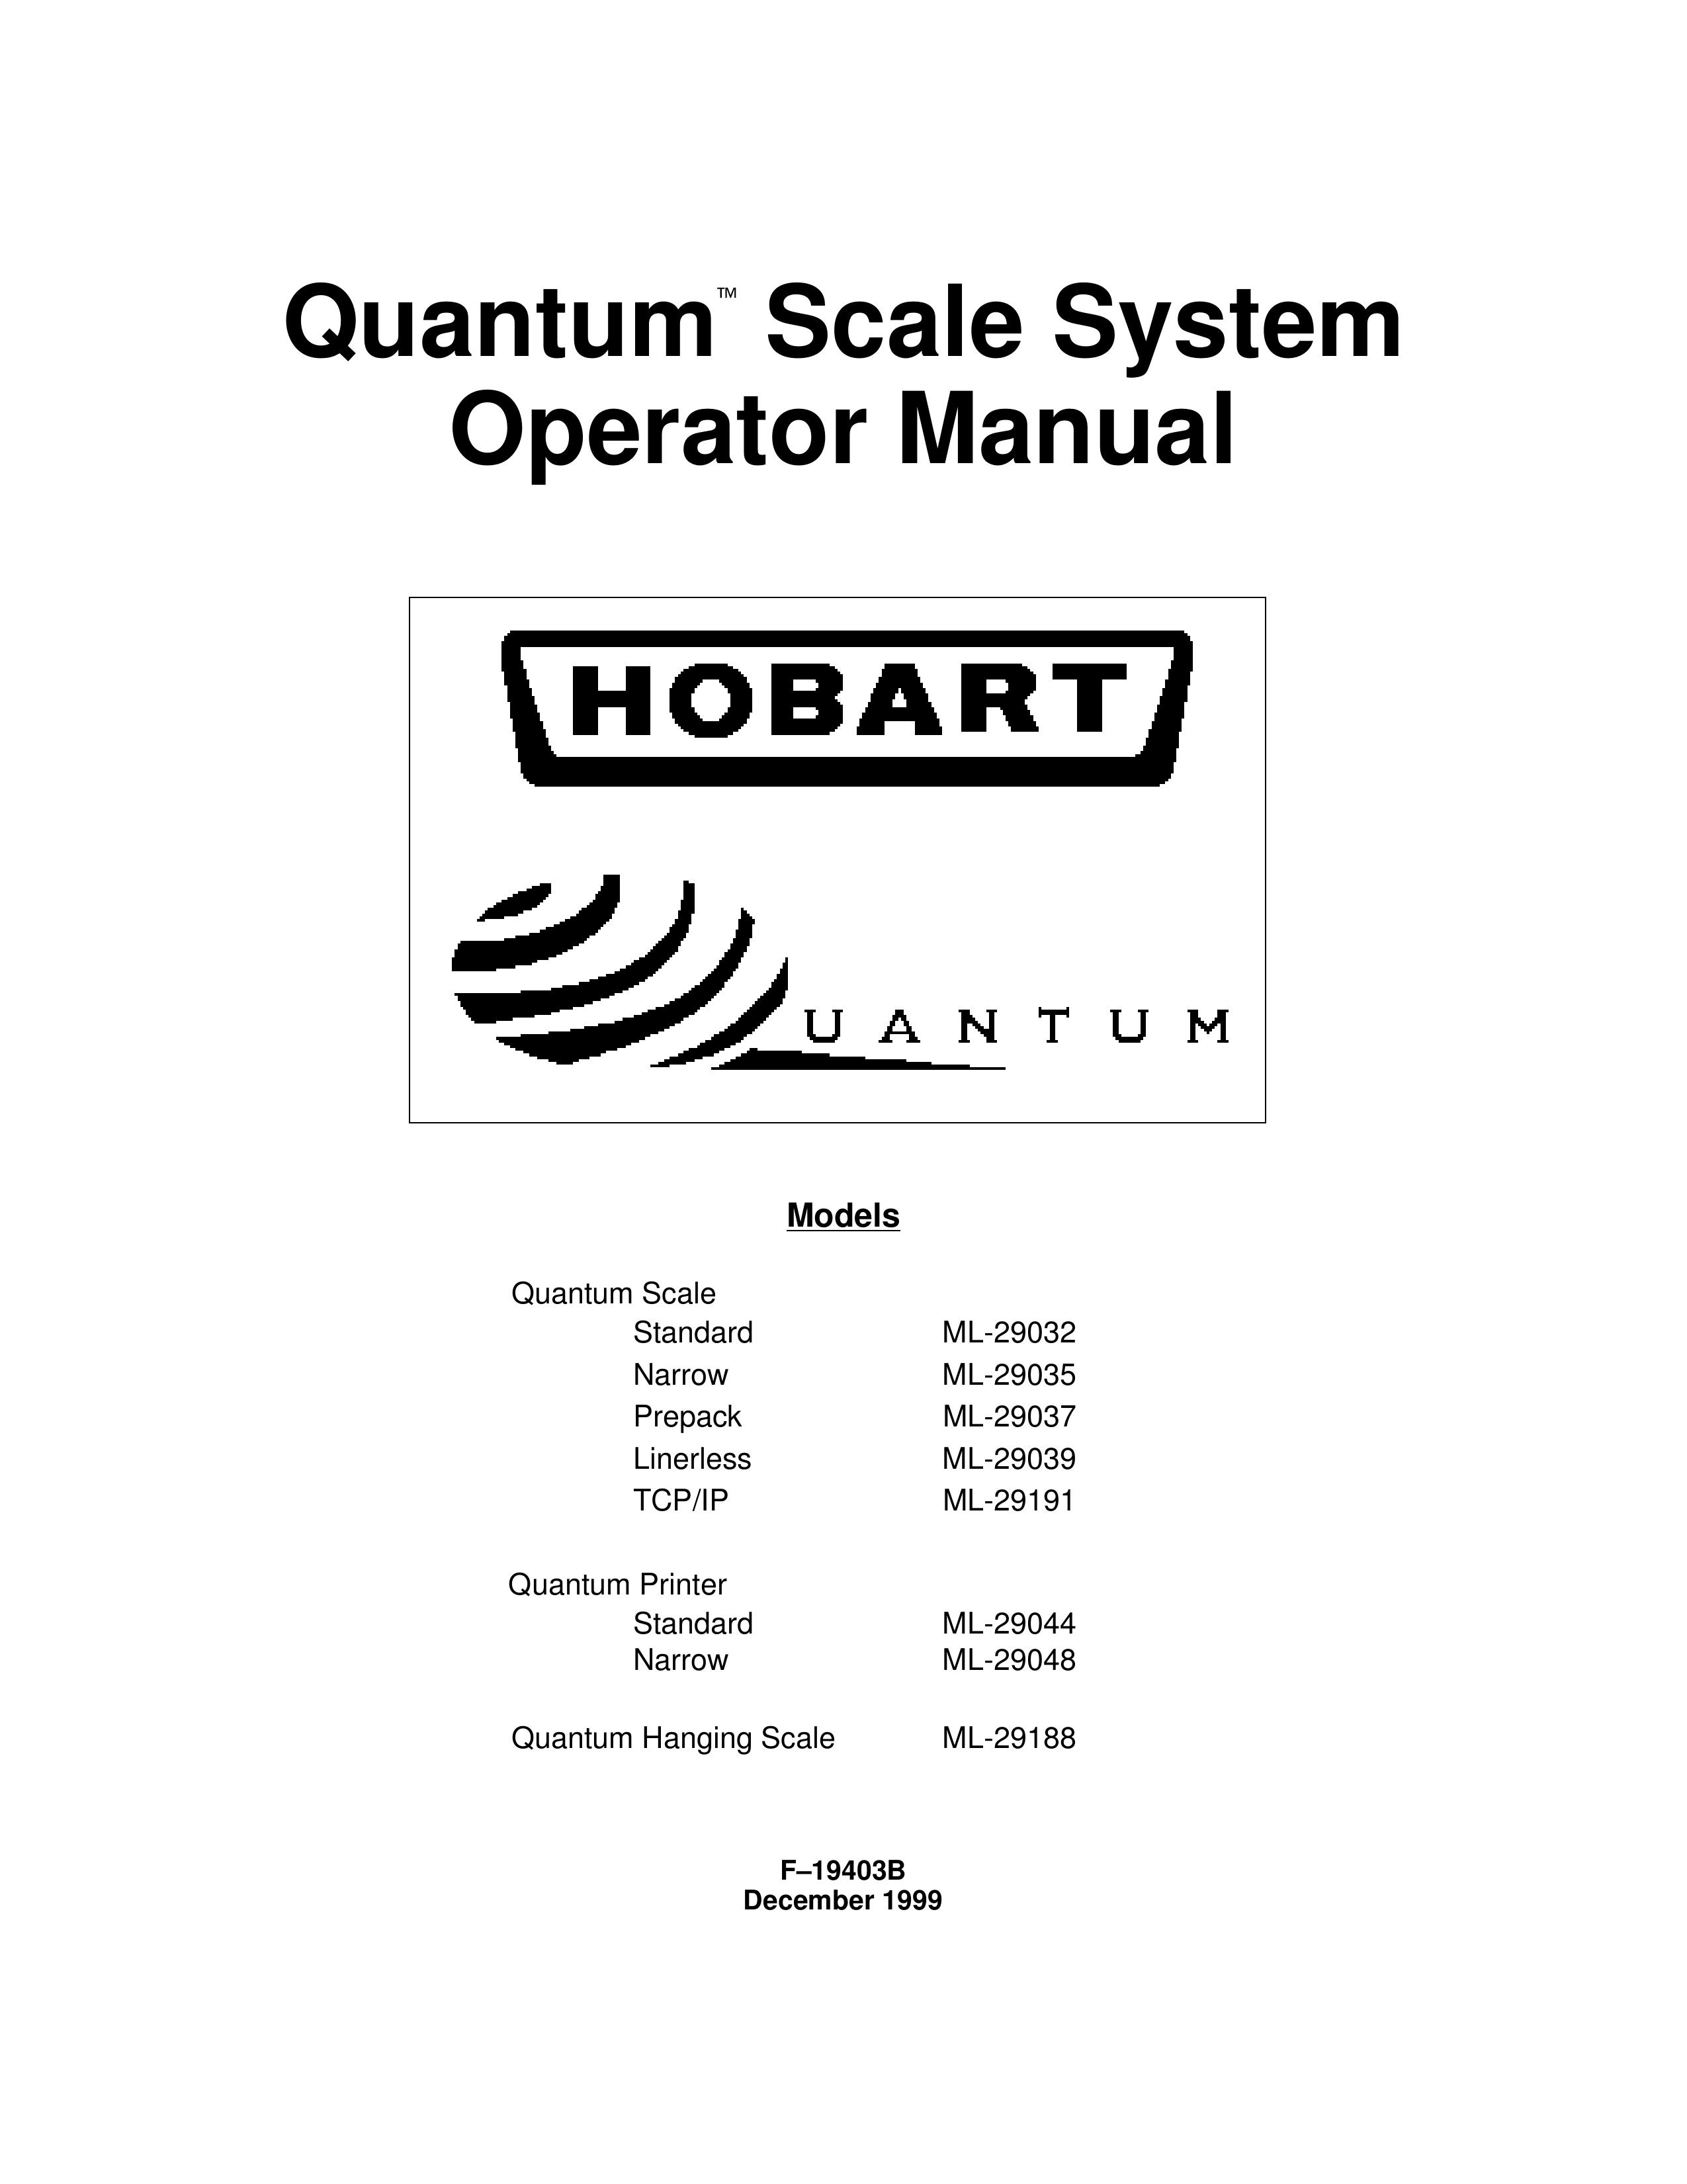 Hobart ML-29188 Scale User Manual